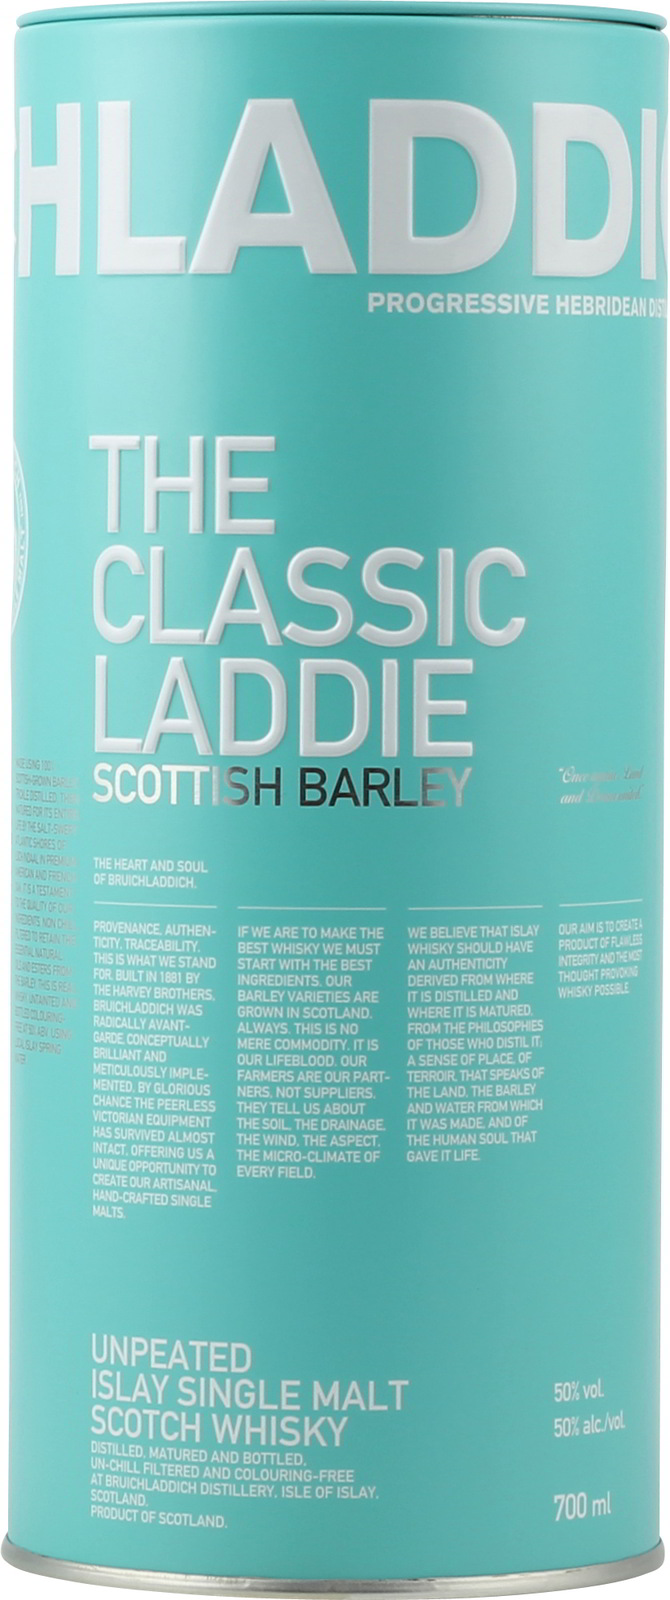 Bruichladdich The Islay Classic Laddie Barley Scottish